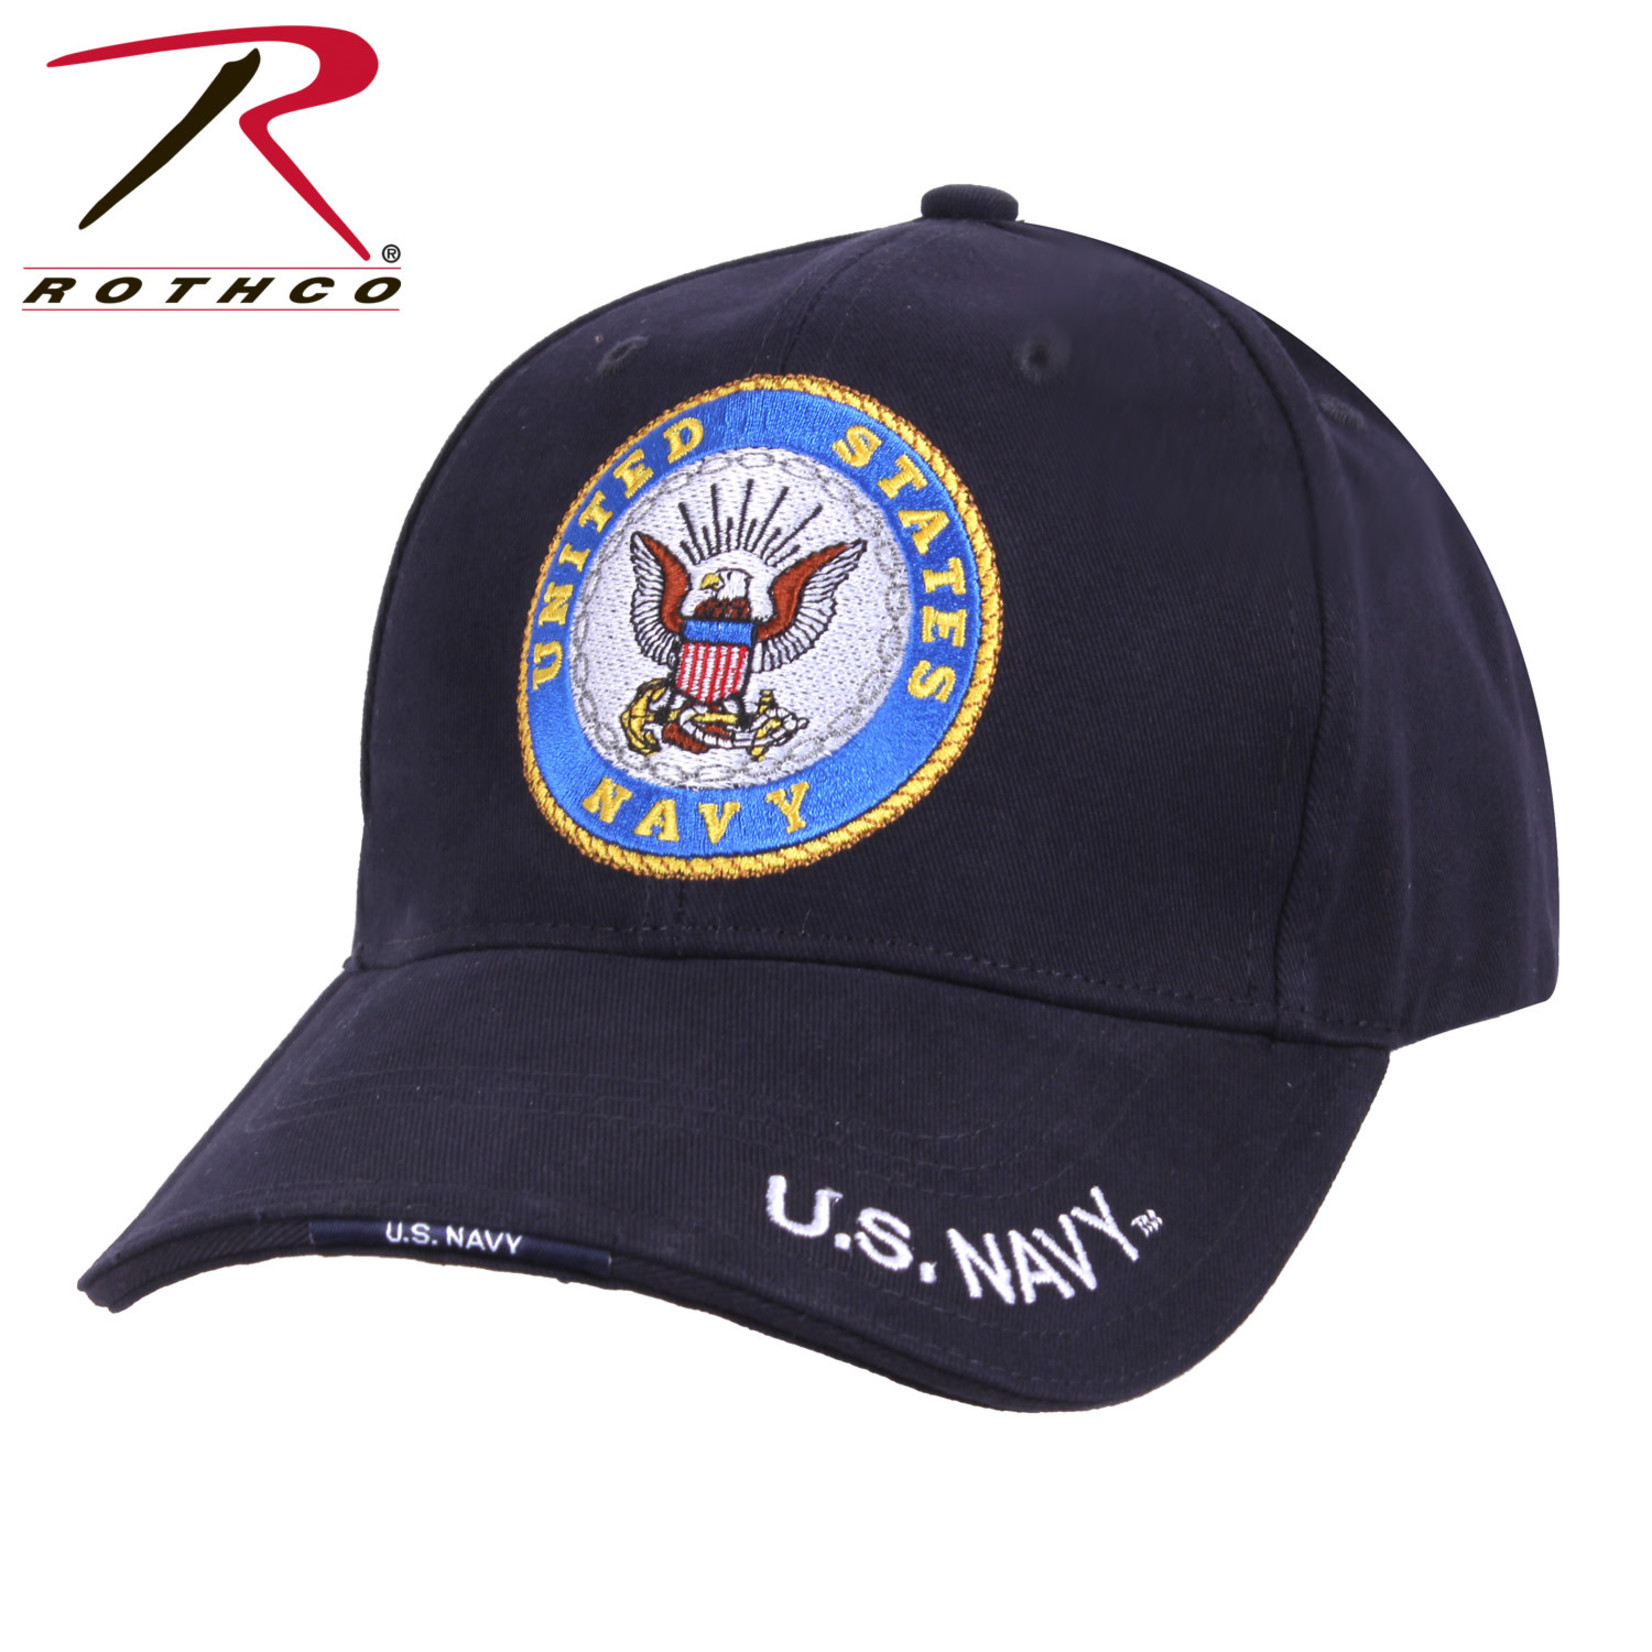 Rothco Rothco US Navy Hat